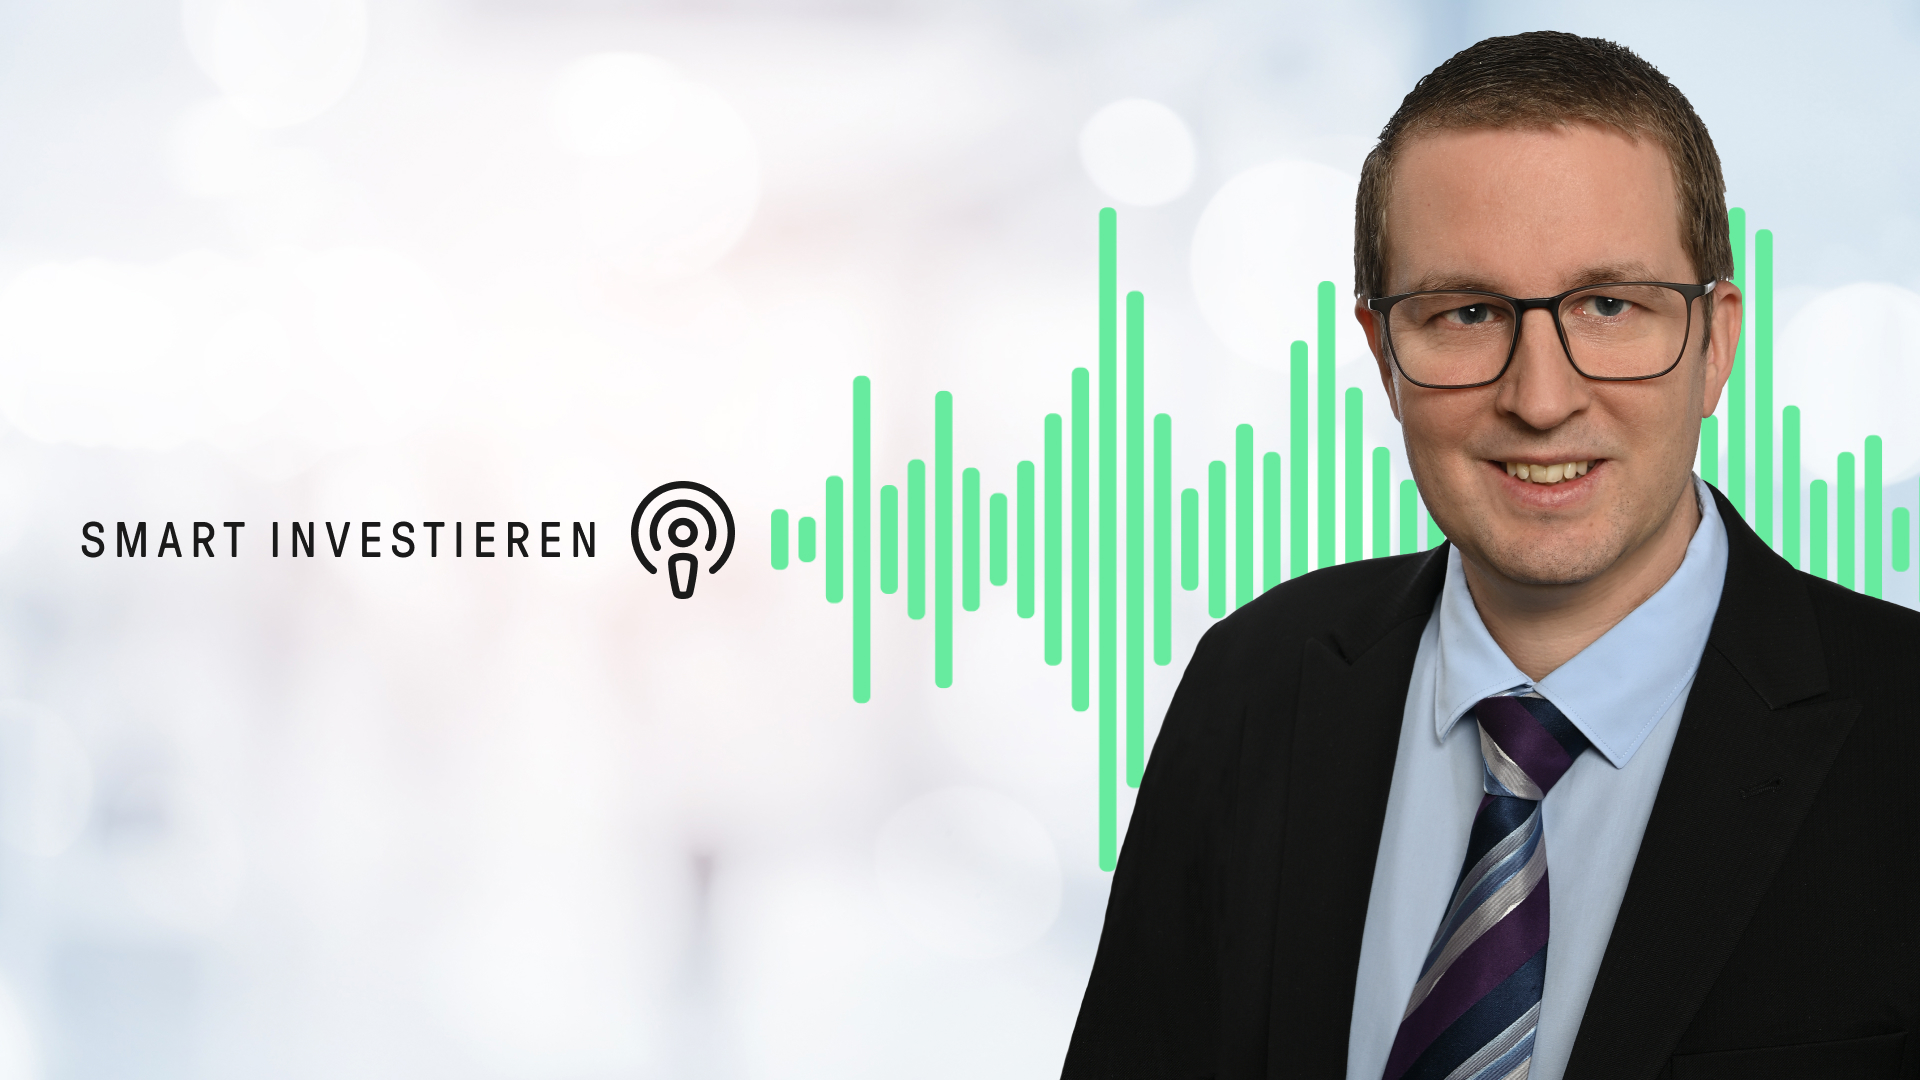 Rendite statt Leerstand: Das macht DEFAMA am Immobilienmarkt so erfolgreich - Podcast mit Matthias Schrade | LYNX Online-Broker